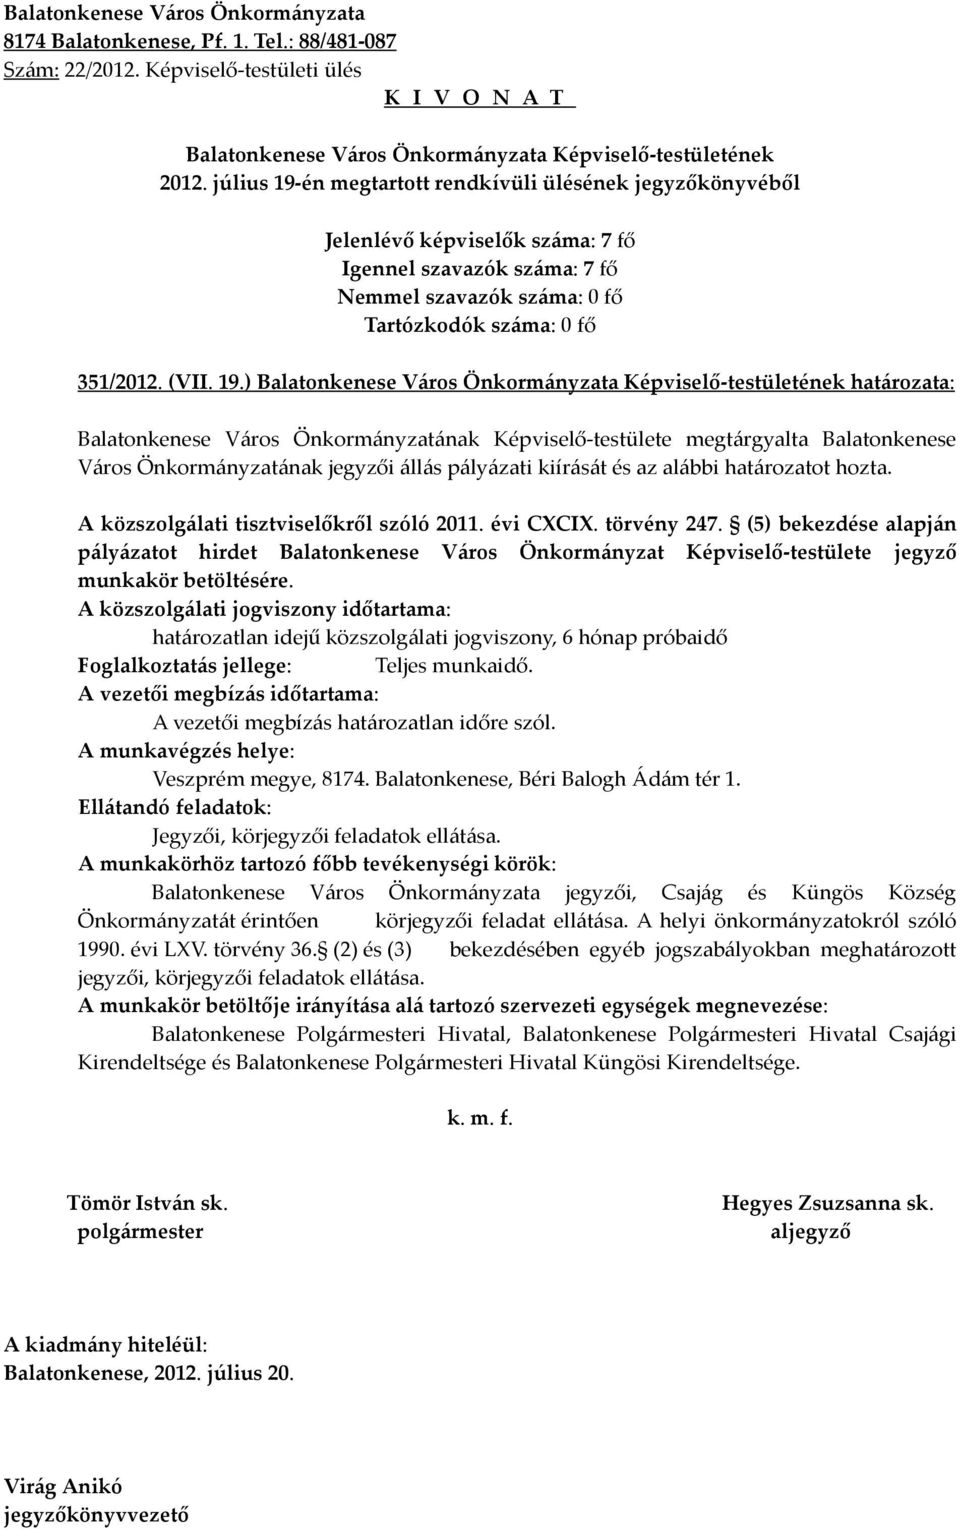 A közszolgálati tisztviselőkről szóló 2011. évi CXCIX. törvény 247. (5) bekezdése alapján pályázatot hirdet Balatonkenese Város Önkormányzat Képviselő-testülete jegyző munkakör betöltésére.